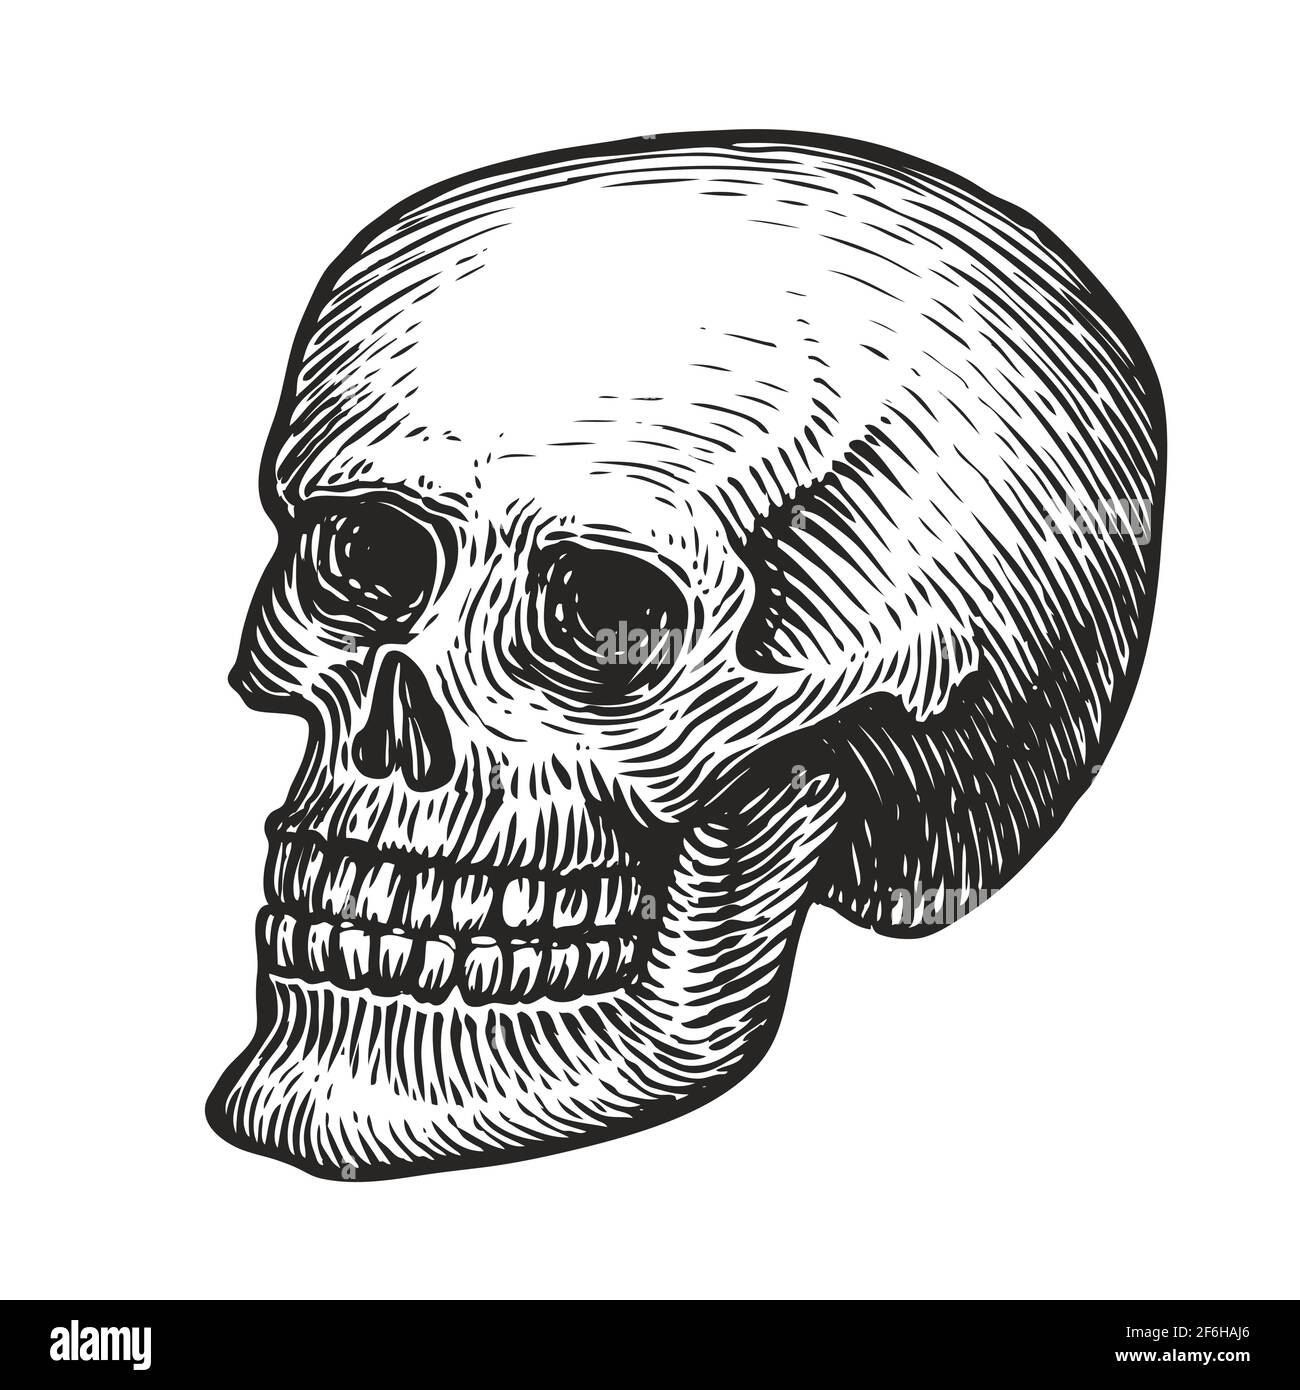 Cranio umano con mandibola inferiore. Illustrazione vettoriale disegnata a mano in stile di incisione vintage Illustrazione Vettoriale